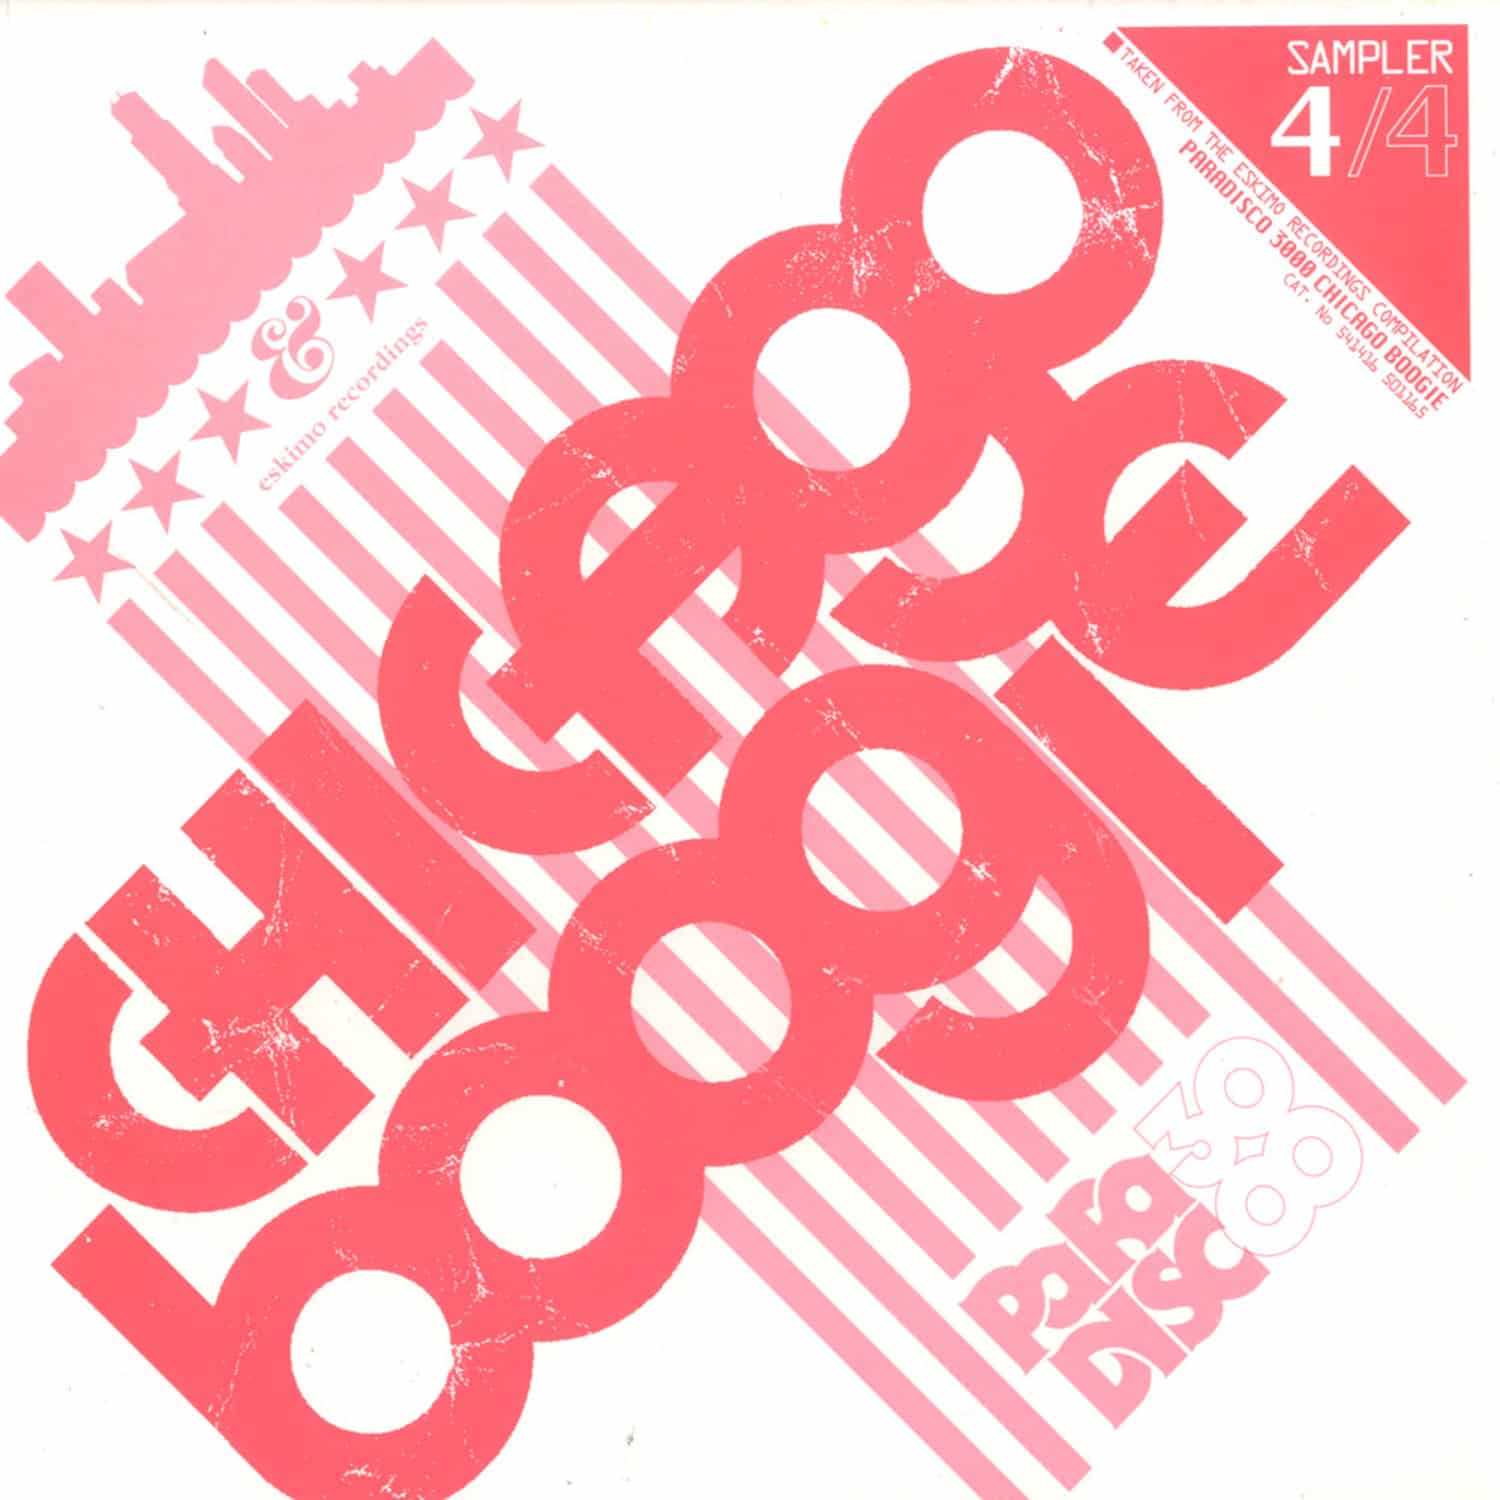 V/A - Paradisco 3000 Chicago Boogie Sampler 4 / 4